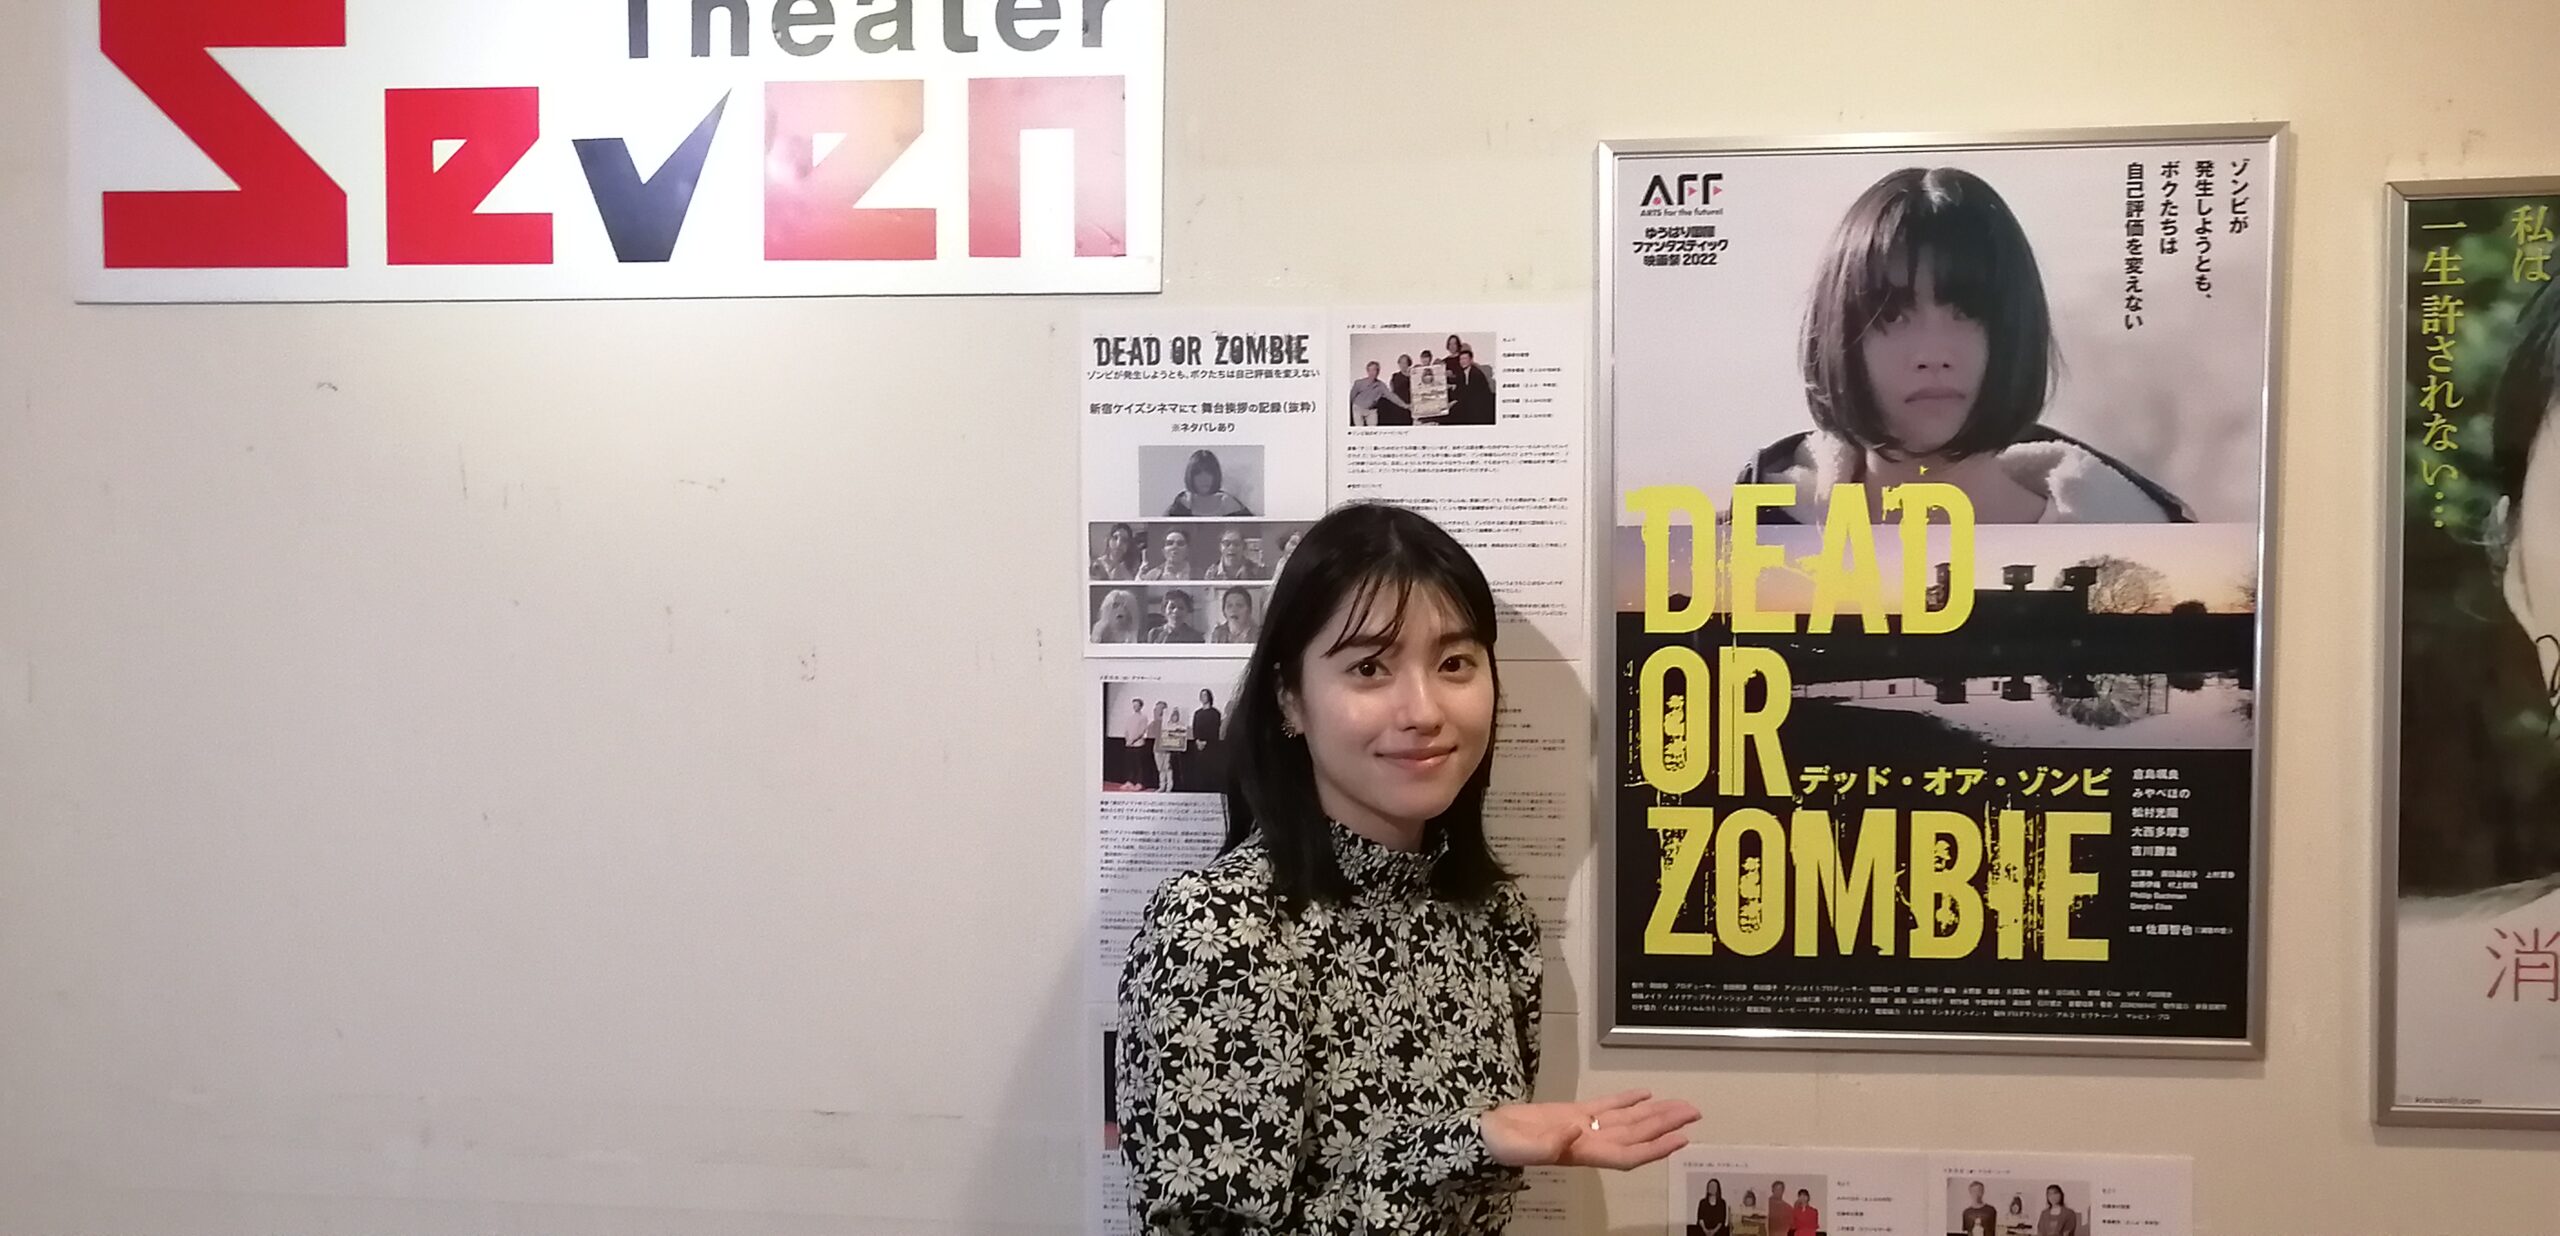 映画『Dead or Zombie ゾンビが発生しようとも、ボクたちは自己評価を変えない』「ネガティブだと思う事も、自分で好きになれたら」倉島颯良さんインタビュー